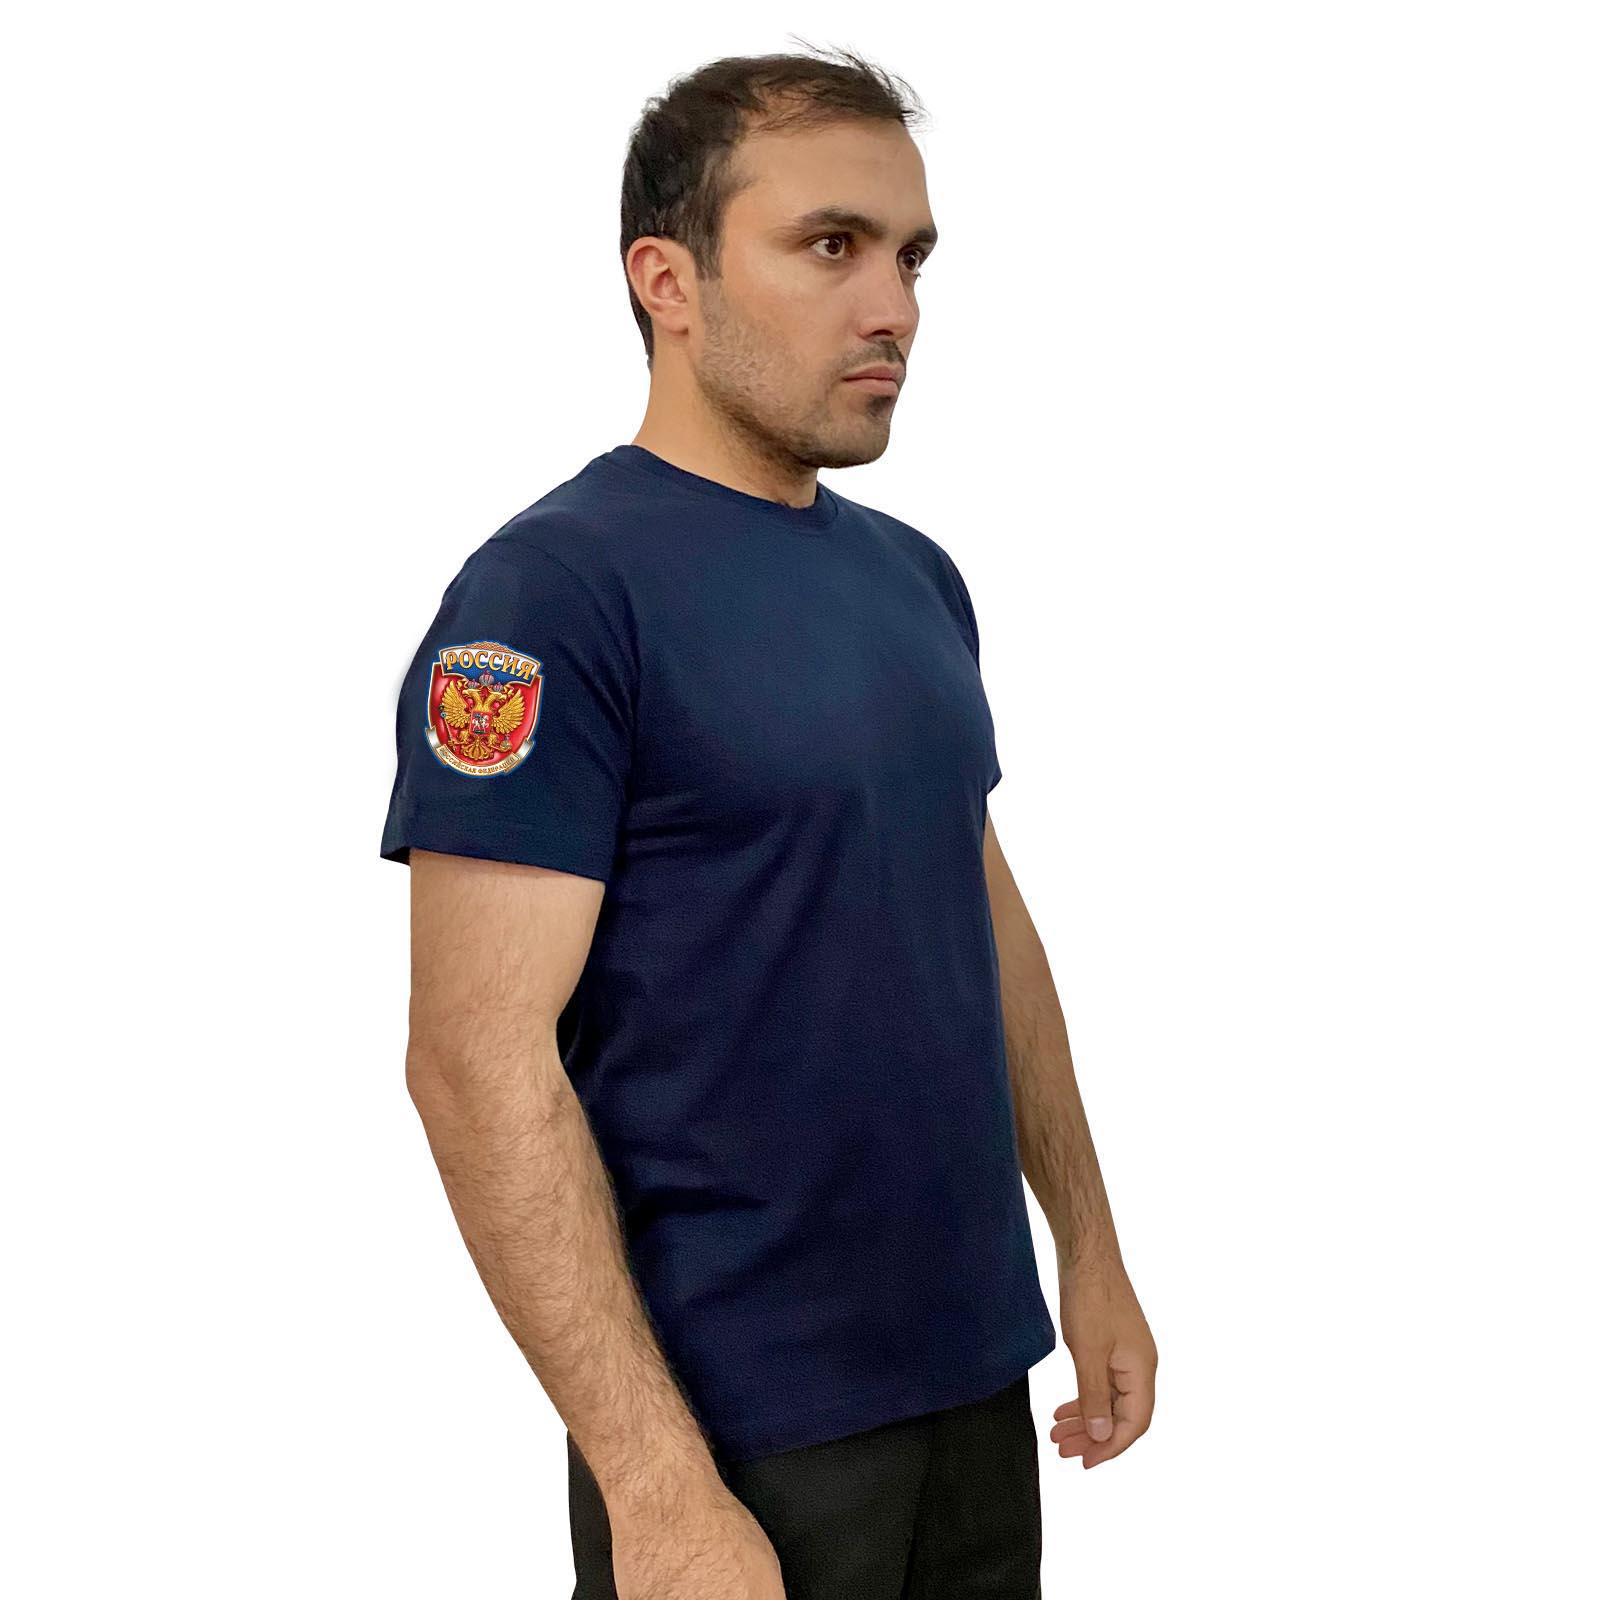 Тёмно-синяя футболка с термопринтом "Россия" на рукаве